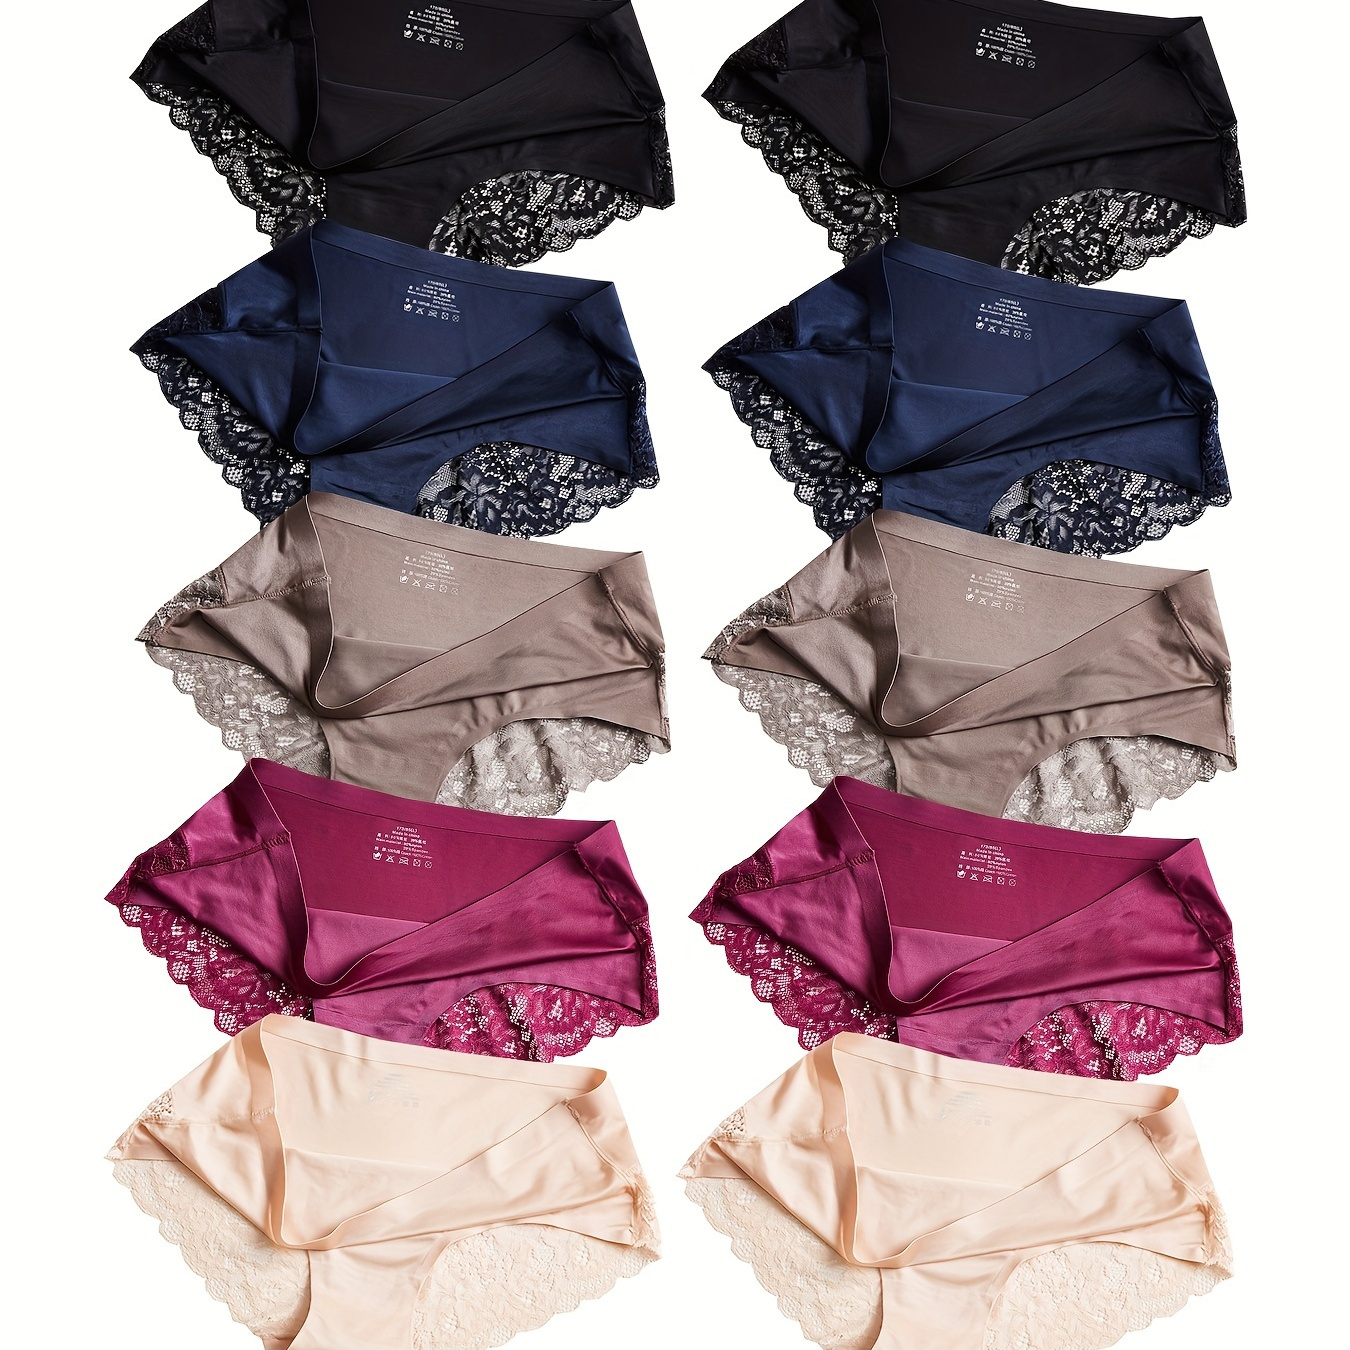 

10 Pcs Lace Trim Panties, Seamless Low Rise Intimates Briefs, Women's Lingerie & Underwear